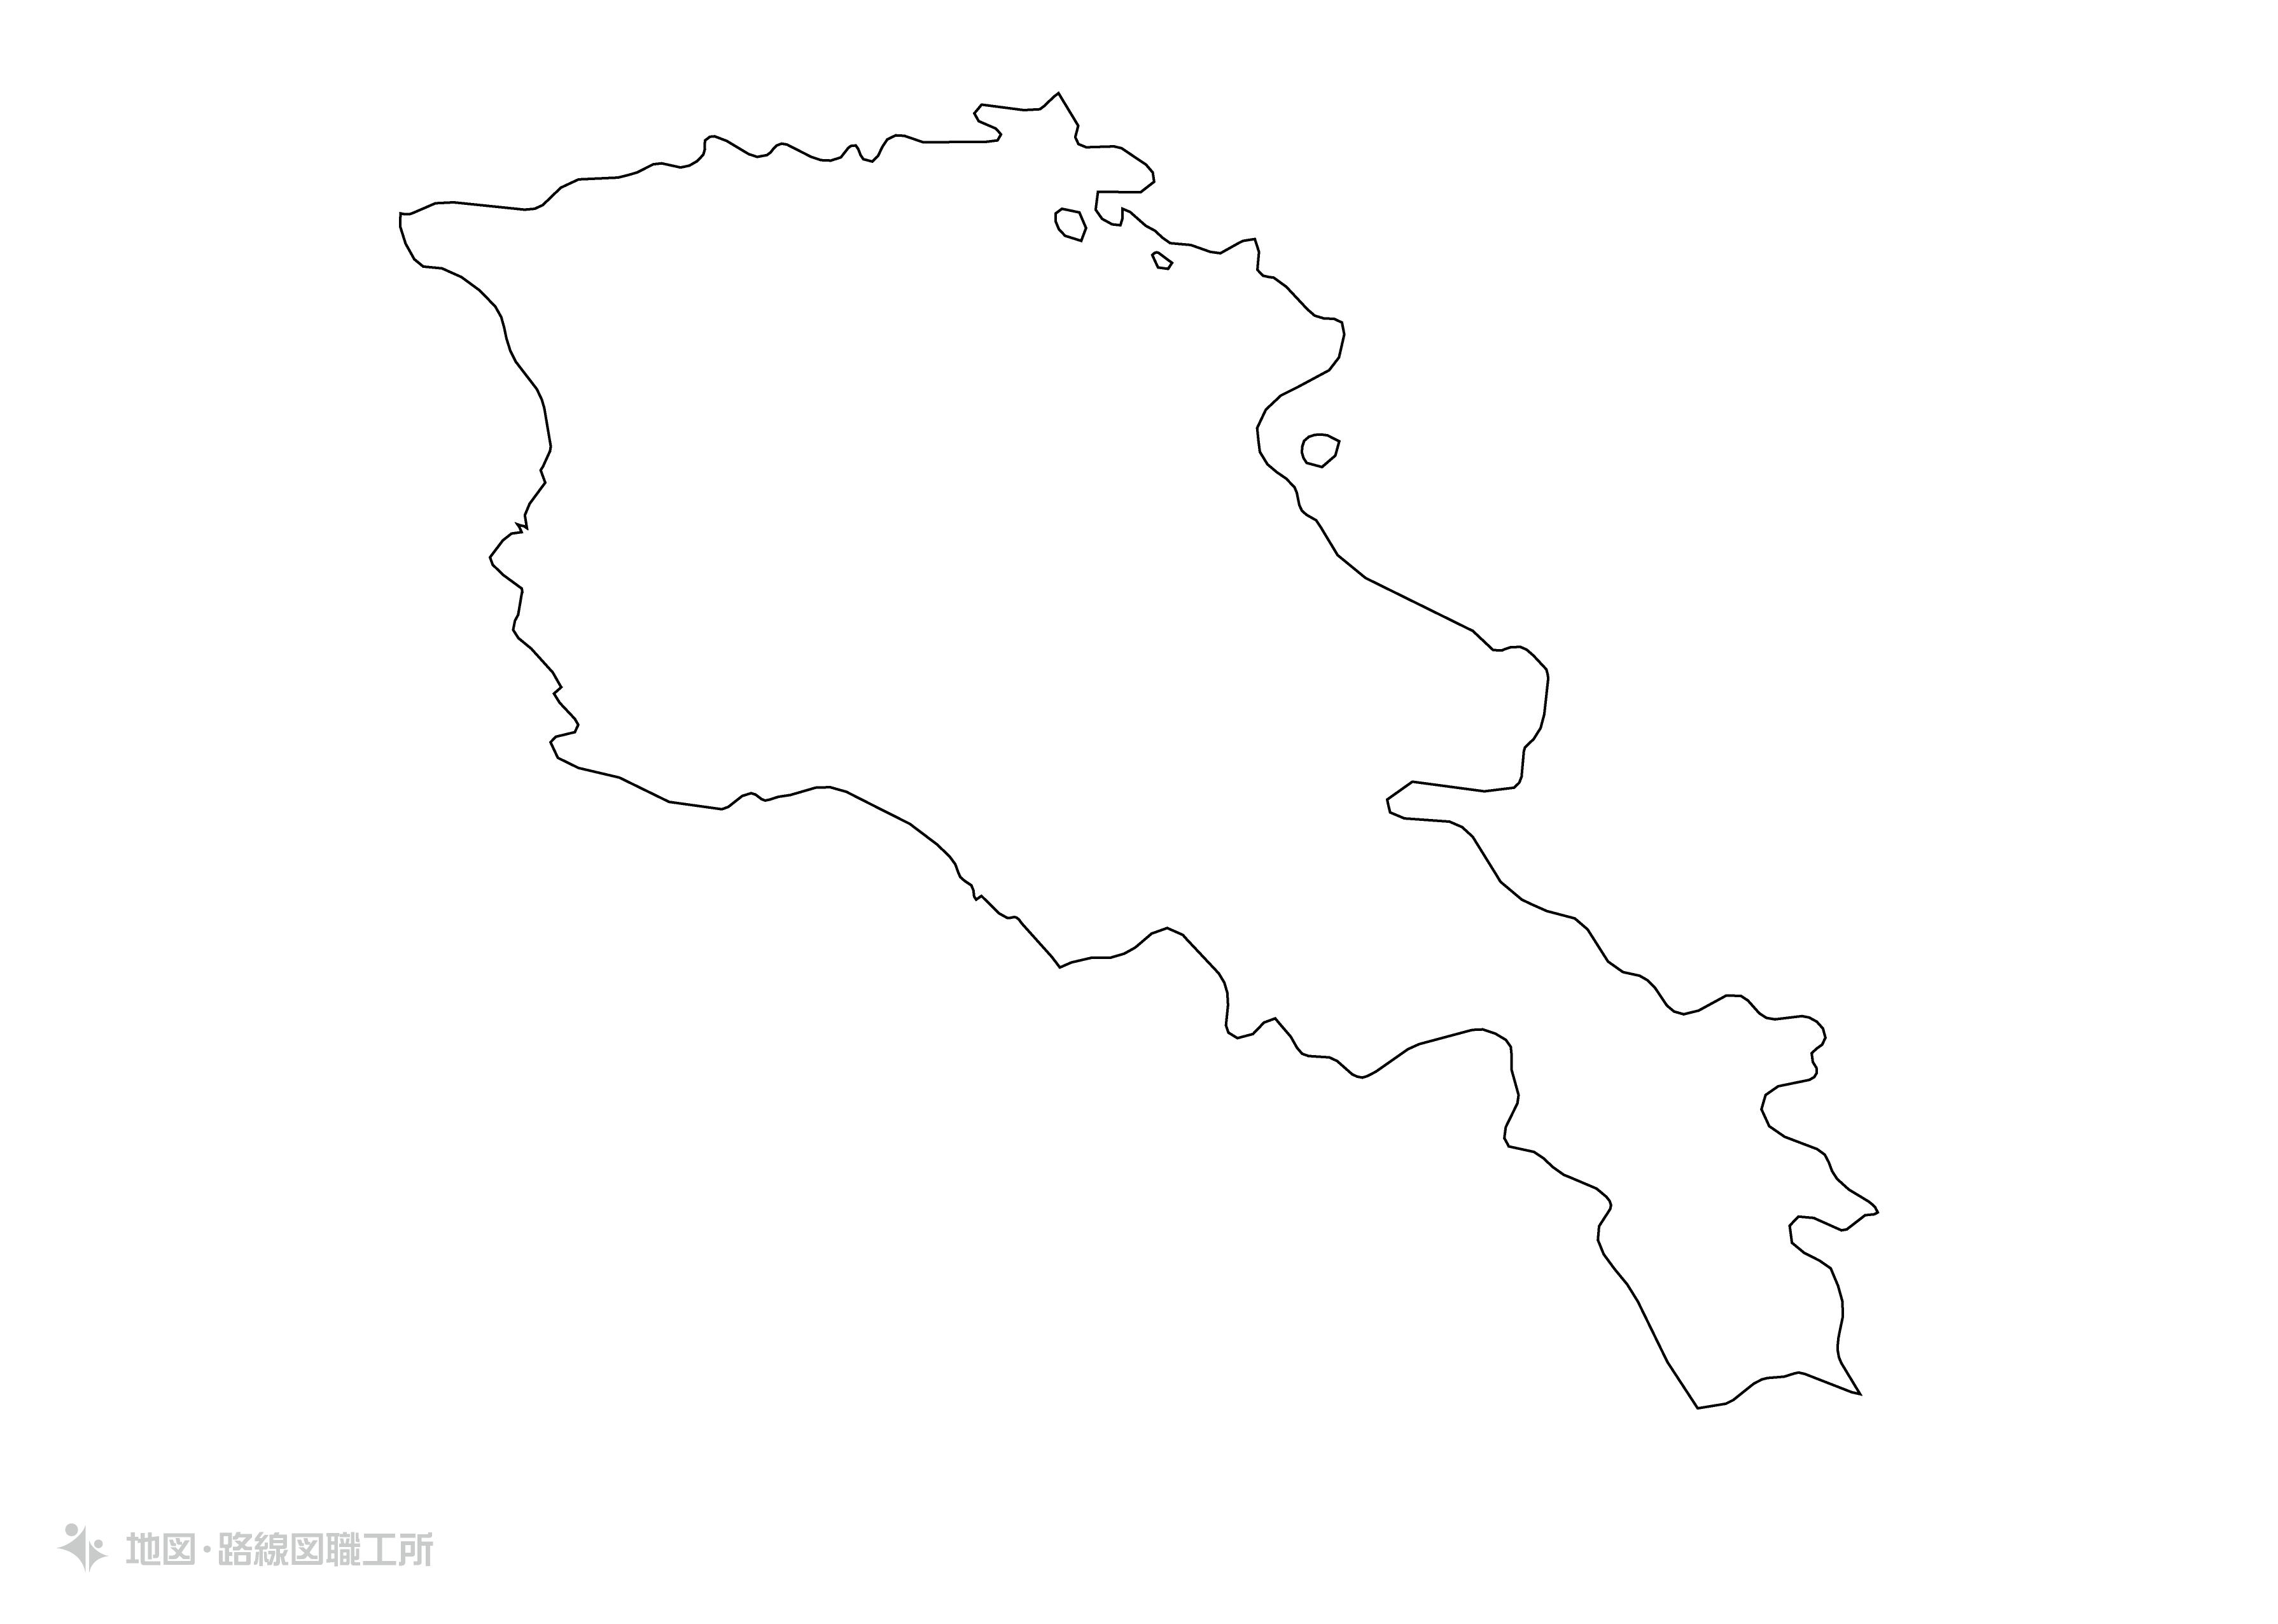 世界の白地図 アルメニア共和国 republic-of-armania map